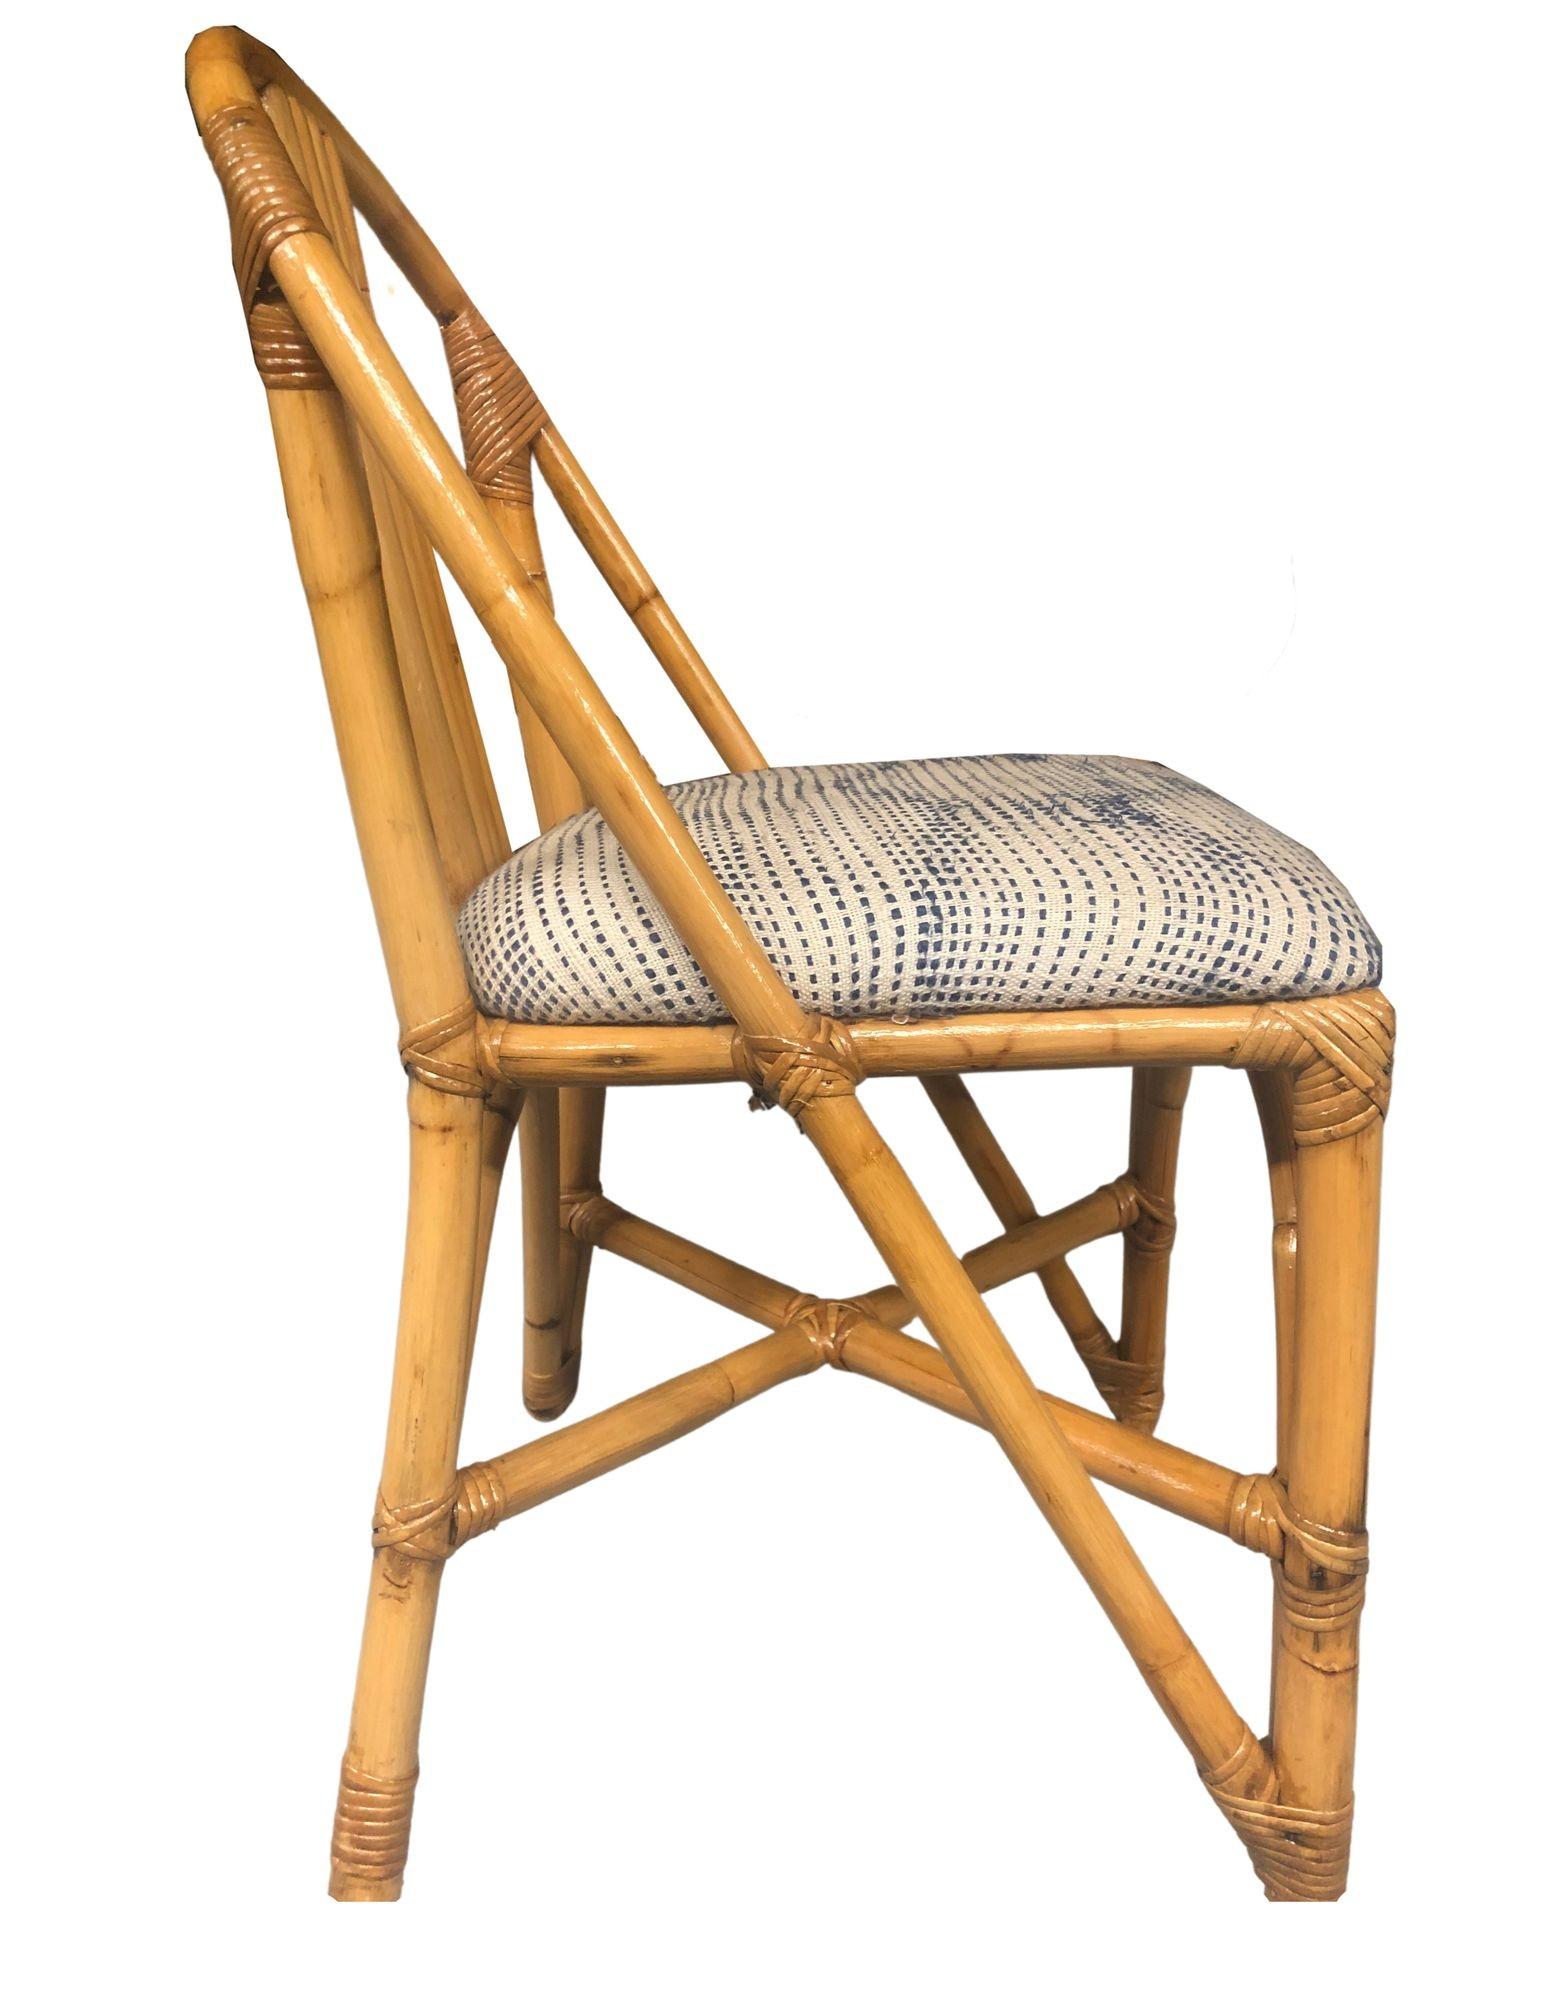 Restaurierte Mid-Century-Ära Rattan Seite Akzent Stuhl mit 5 Strang Rückenlehne mit einem Hufeisen Bogen, der von den vorderen Beinen rund um die Gesamtheit der Stuhl zu einer skulpturalen Rückenlehne Form erstreckt sich. Dieser Beistellstuhl eignet